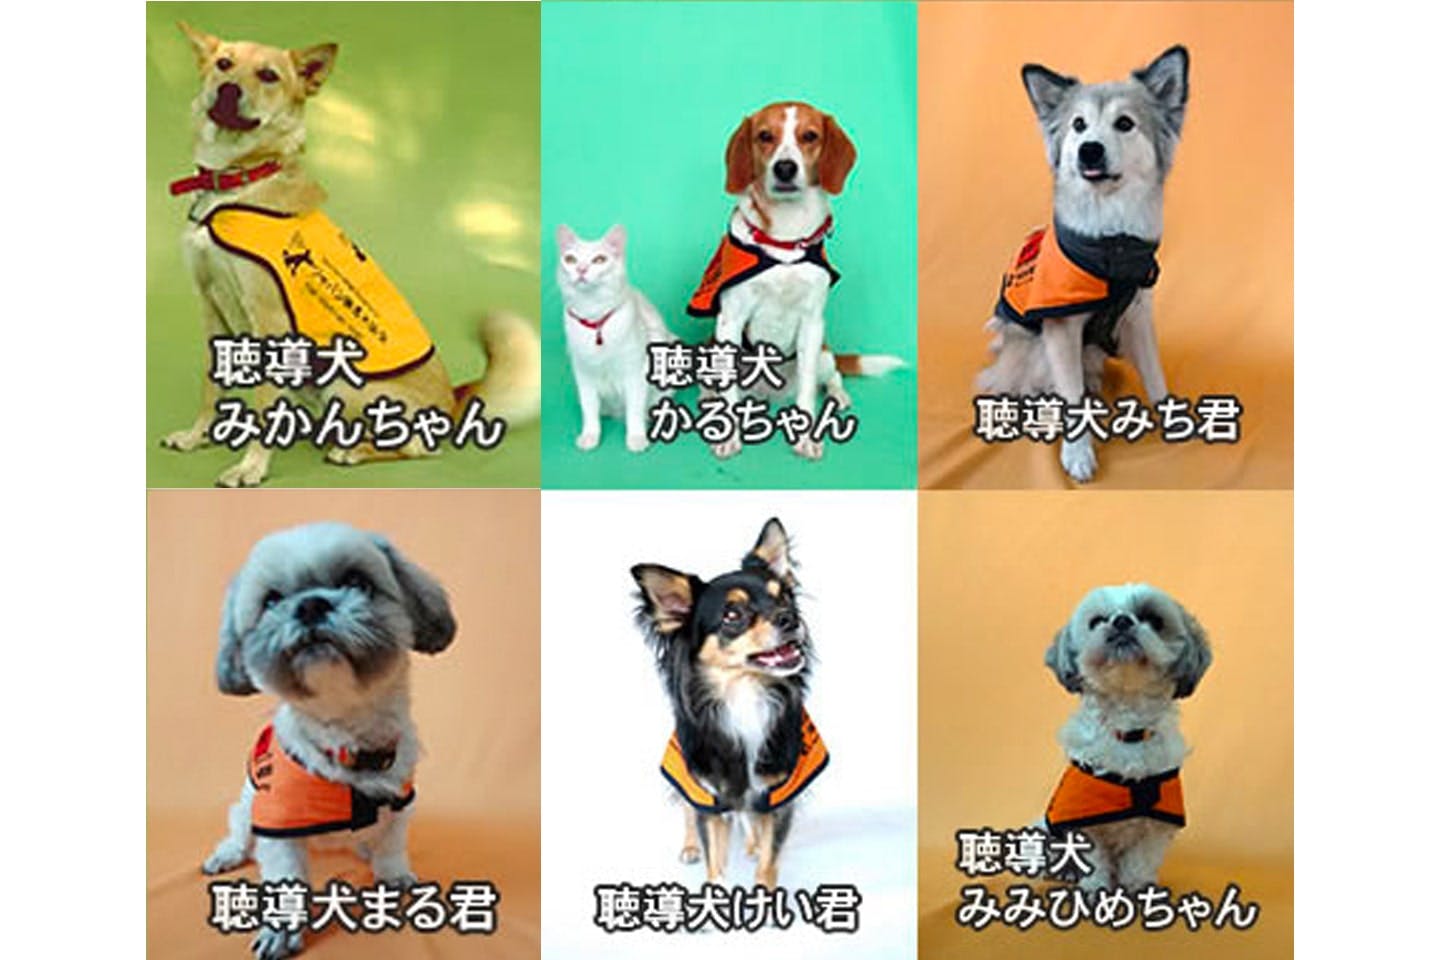 聴導犬はカラフル。中型MIX・ビーグルMIX・シーズー・チワワなどさまざまな犬種が活躍しています（日本聴導犬協会提供）